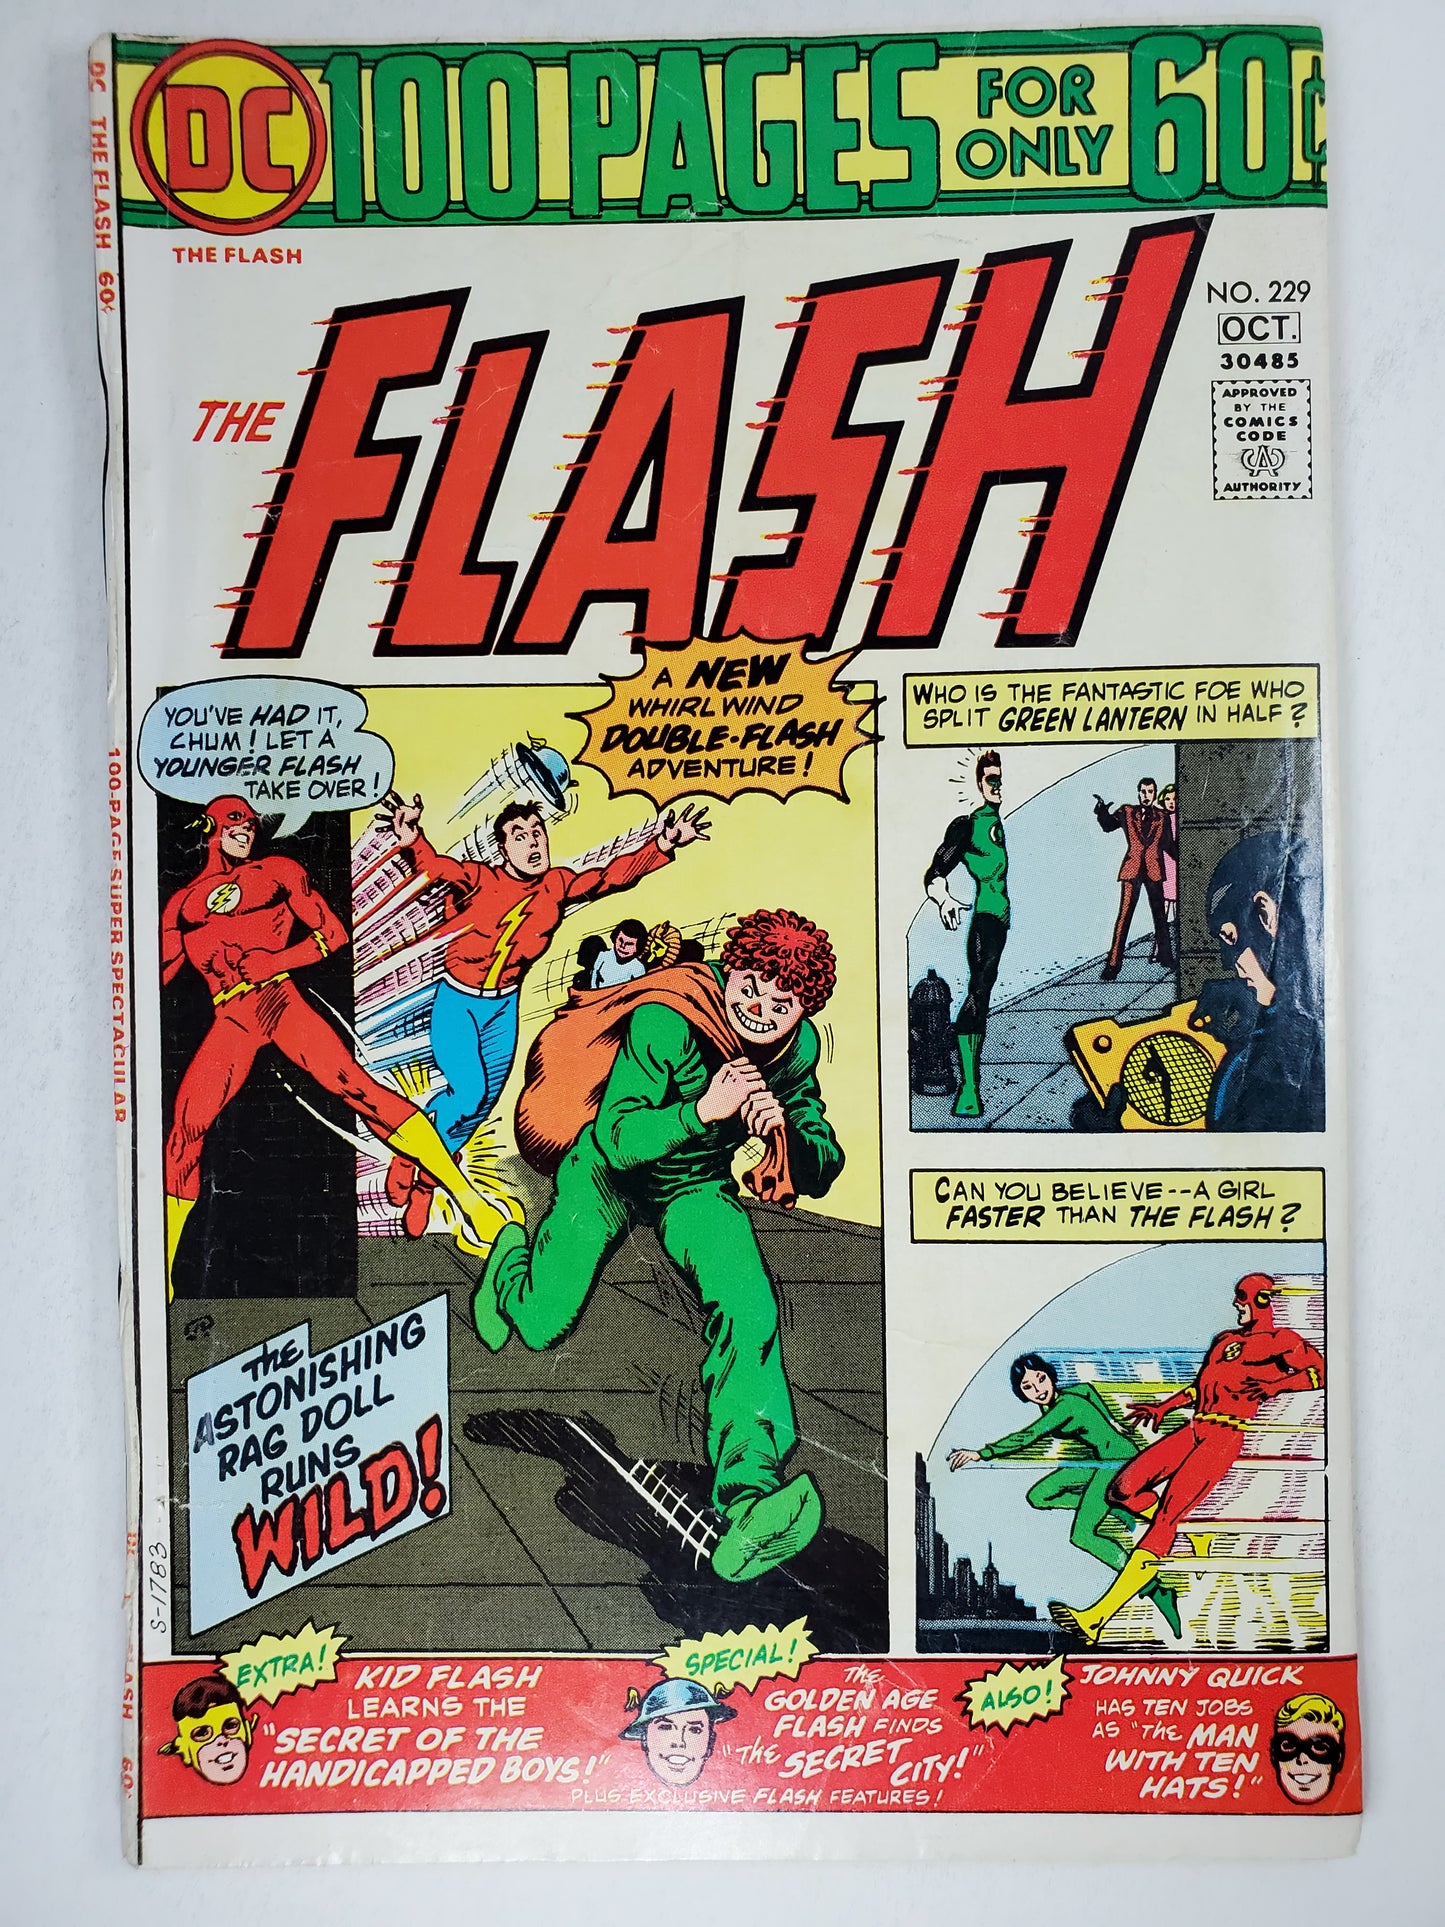 DC The Flash Vol 1 #229 DE